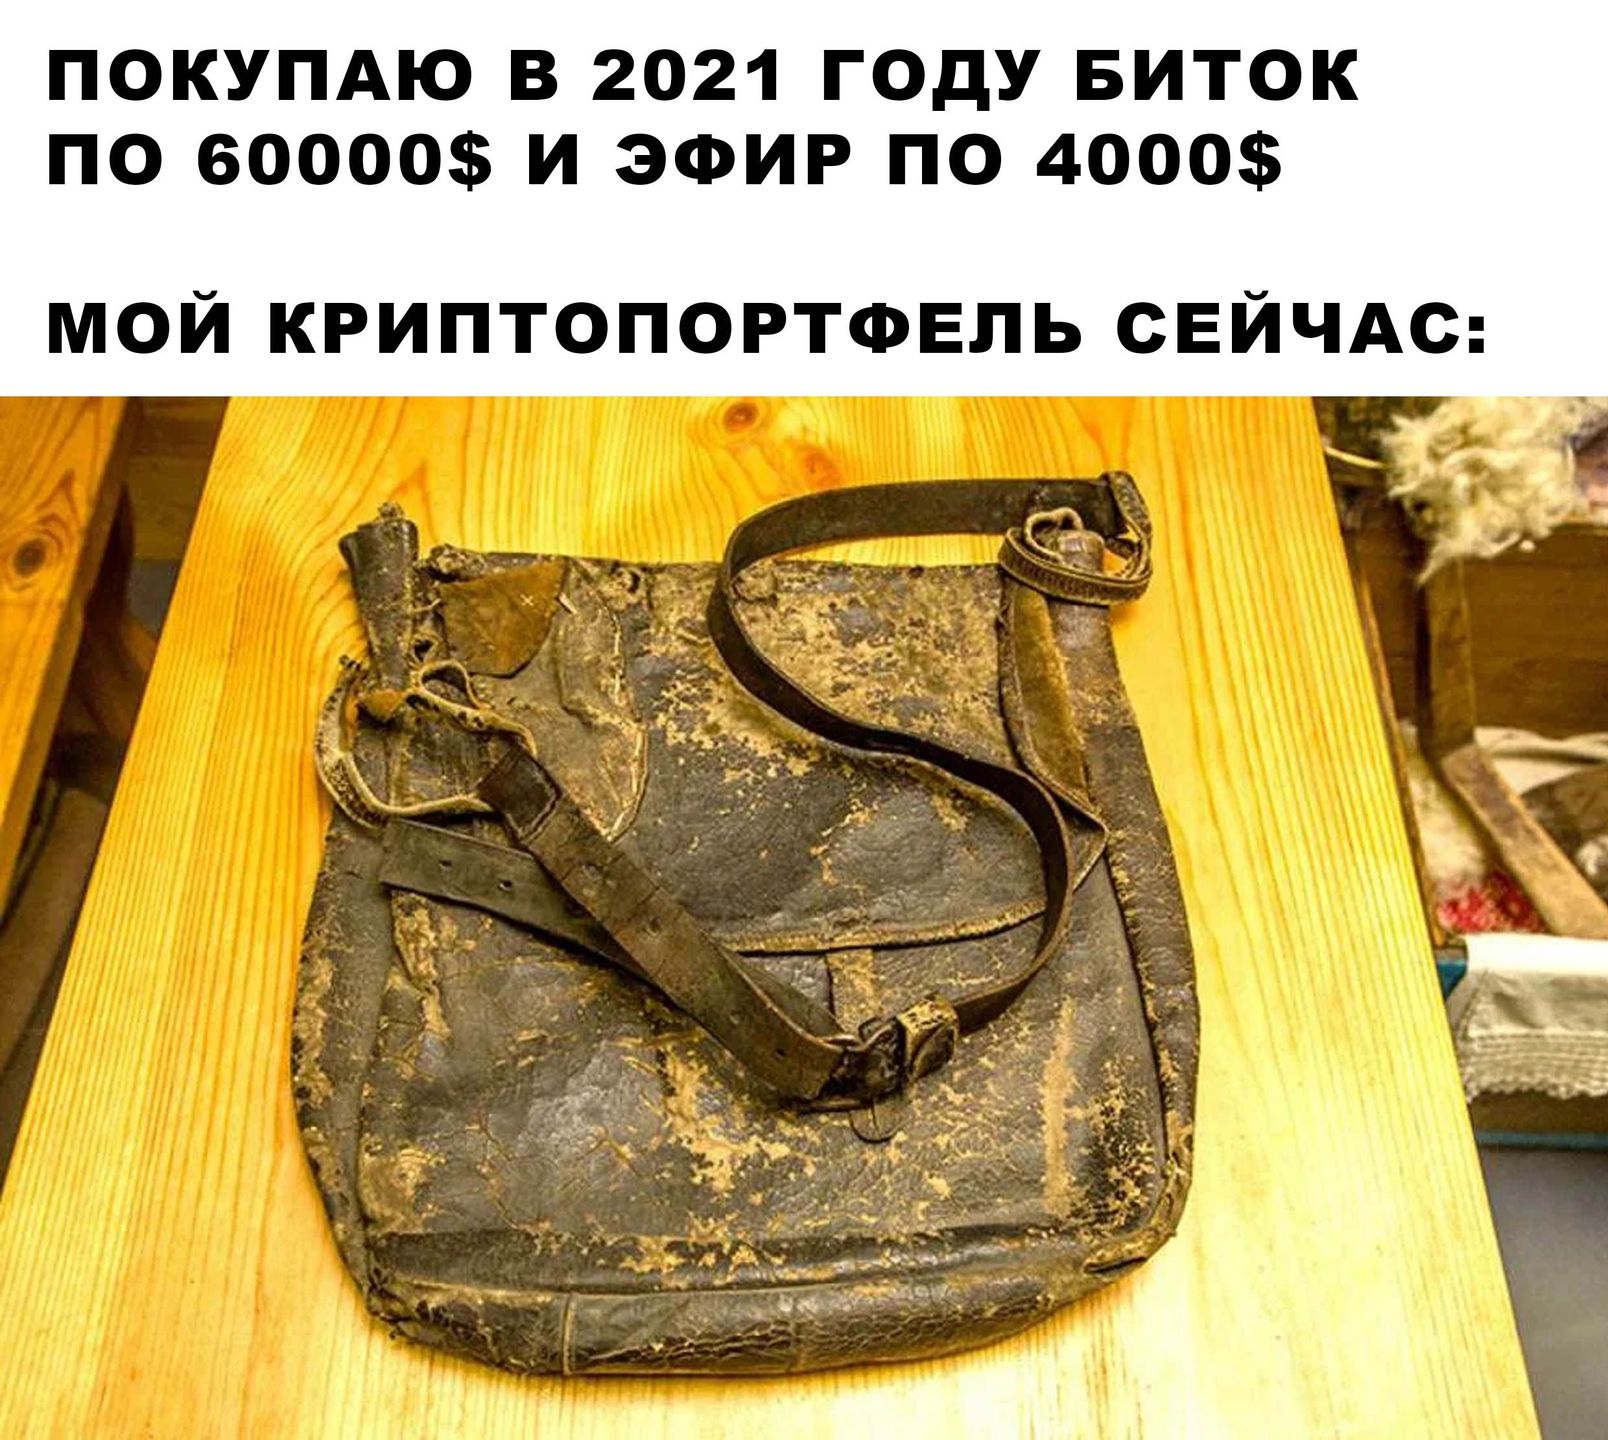 Старая сумка